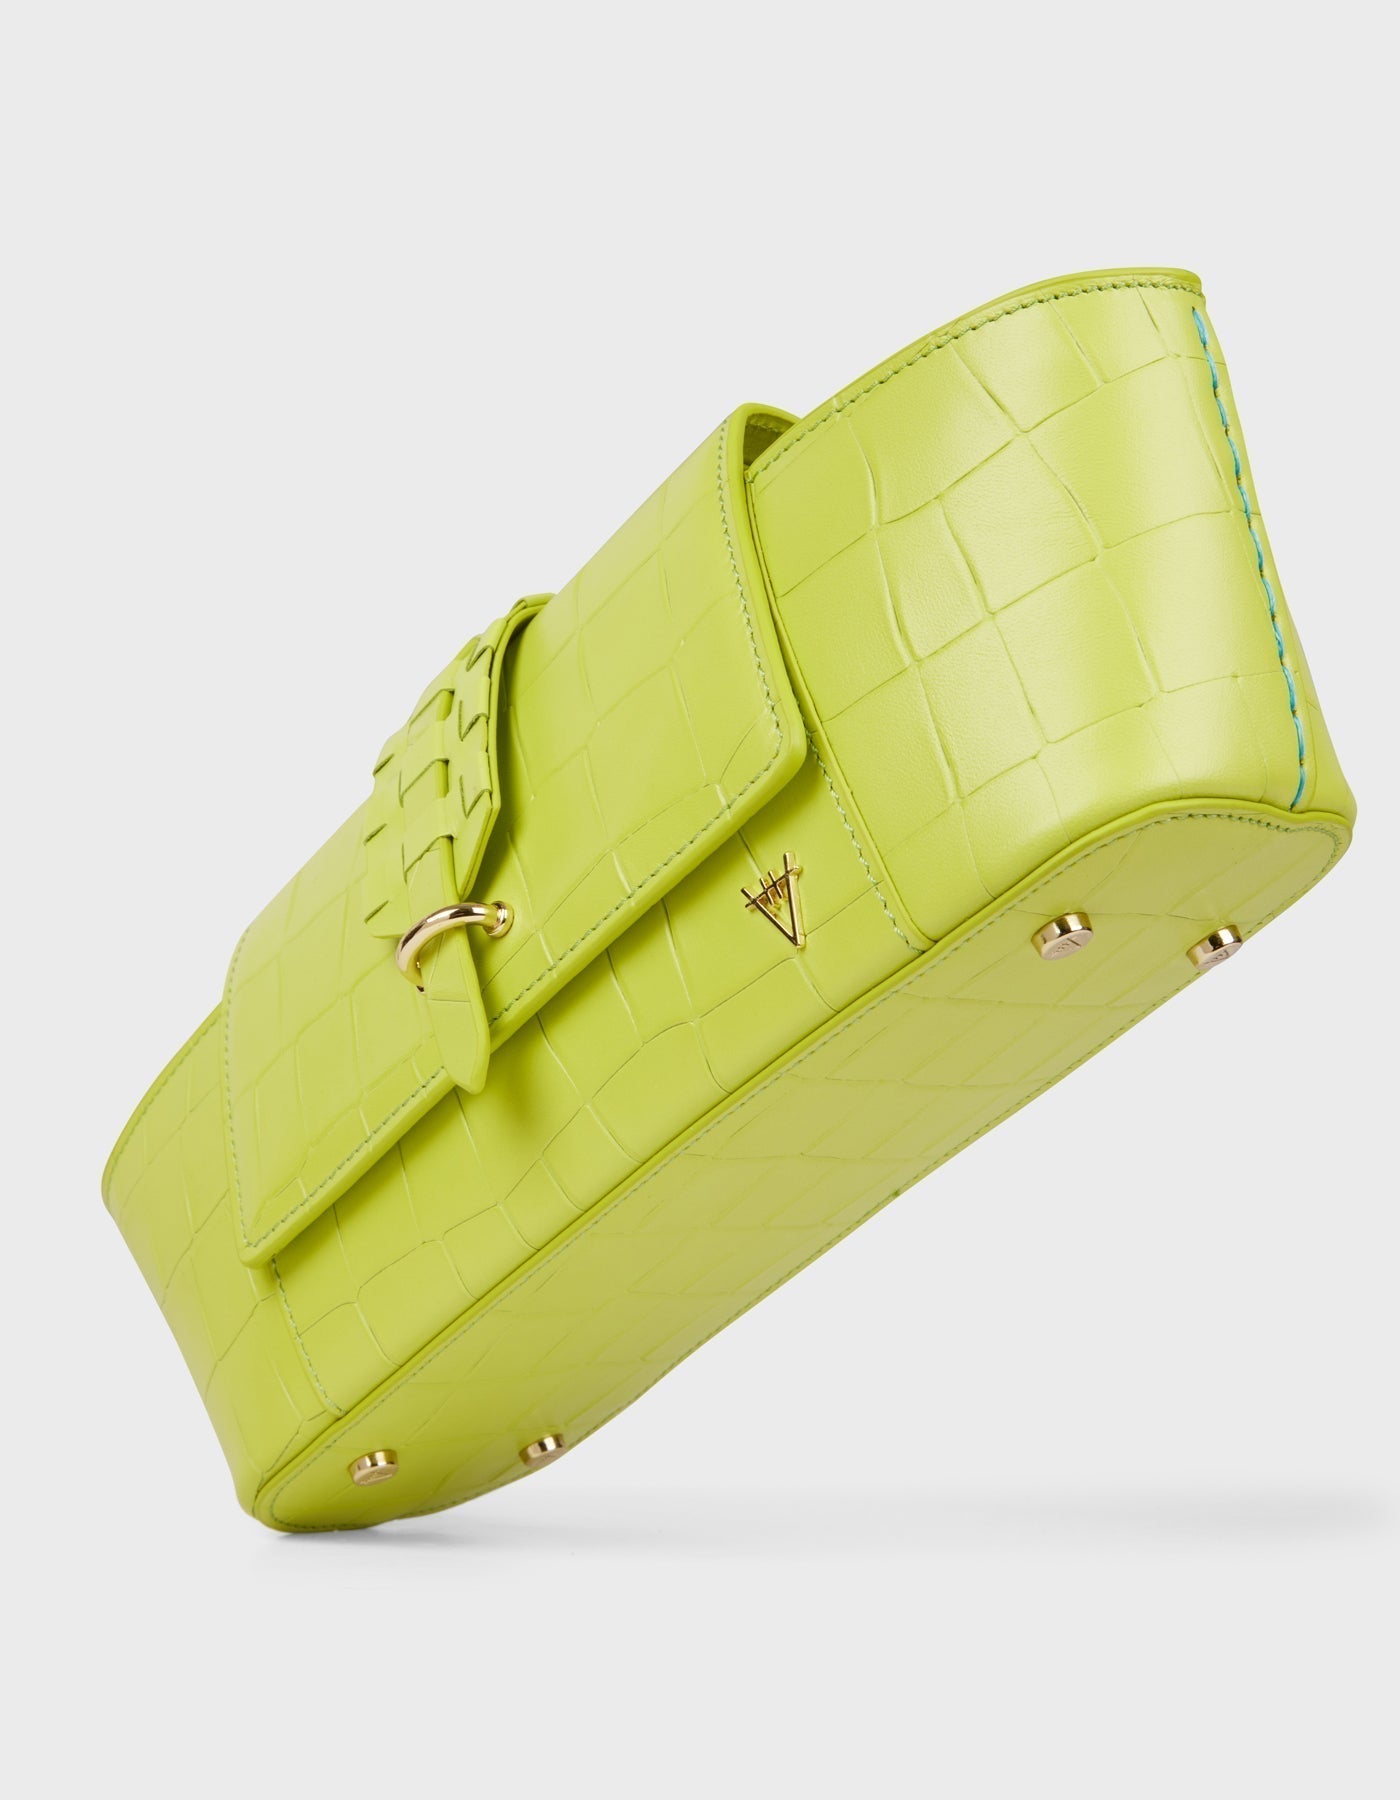 HiVa Atelier | Navis Shoulder Bag Croco Effect Apple | Beautiful and Versatile